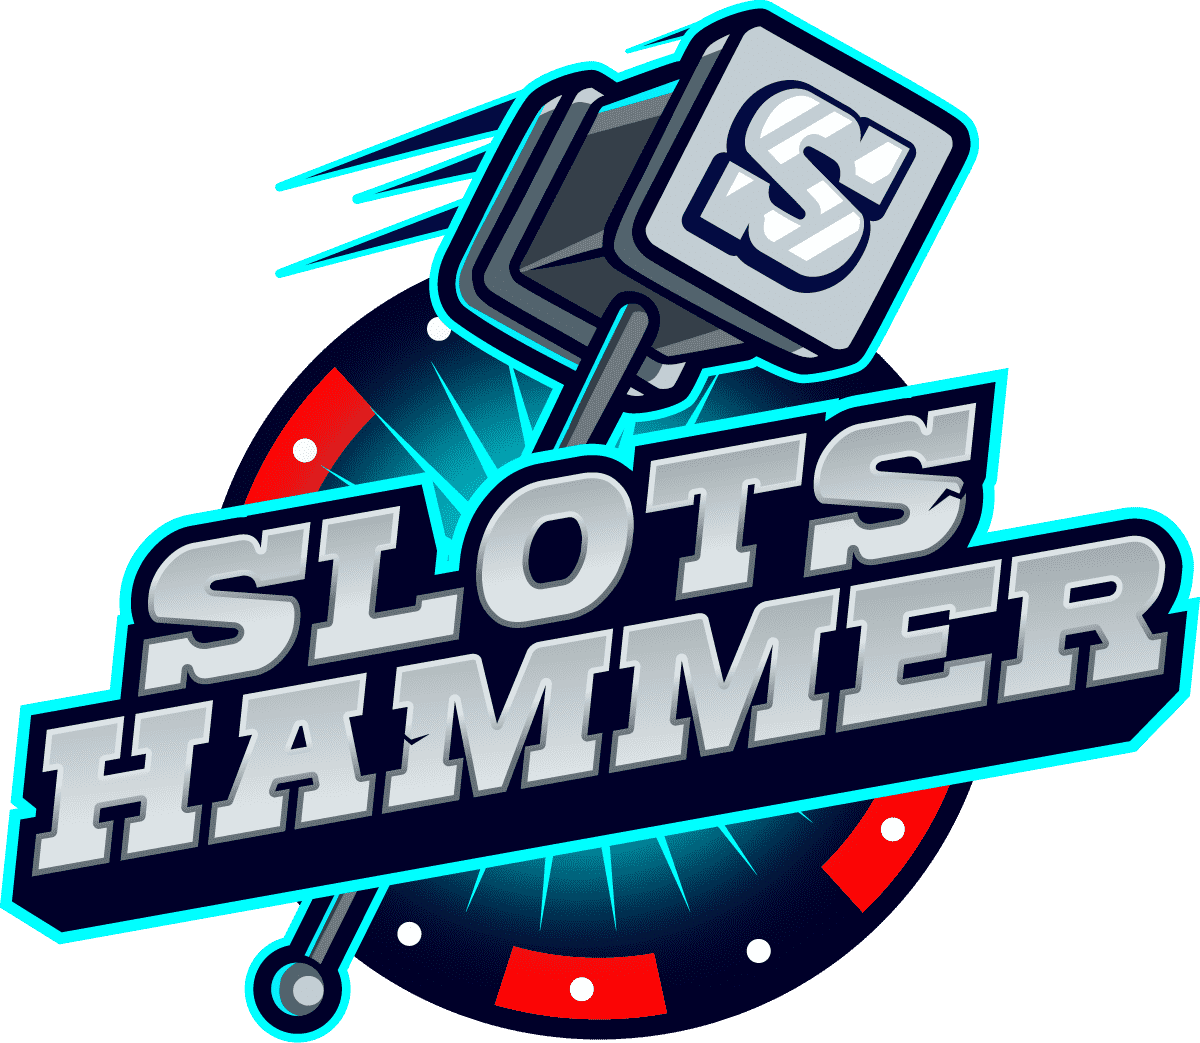 Slots Hammer Casino logo